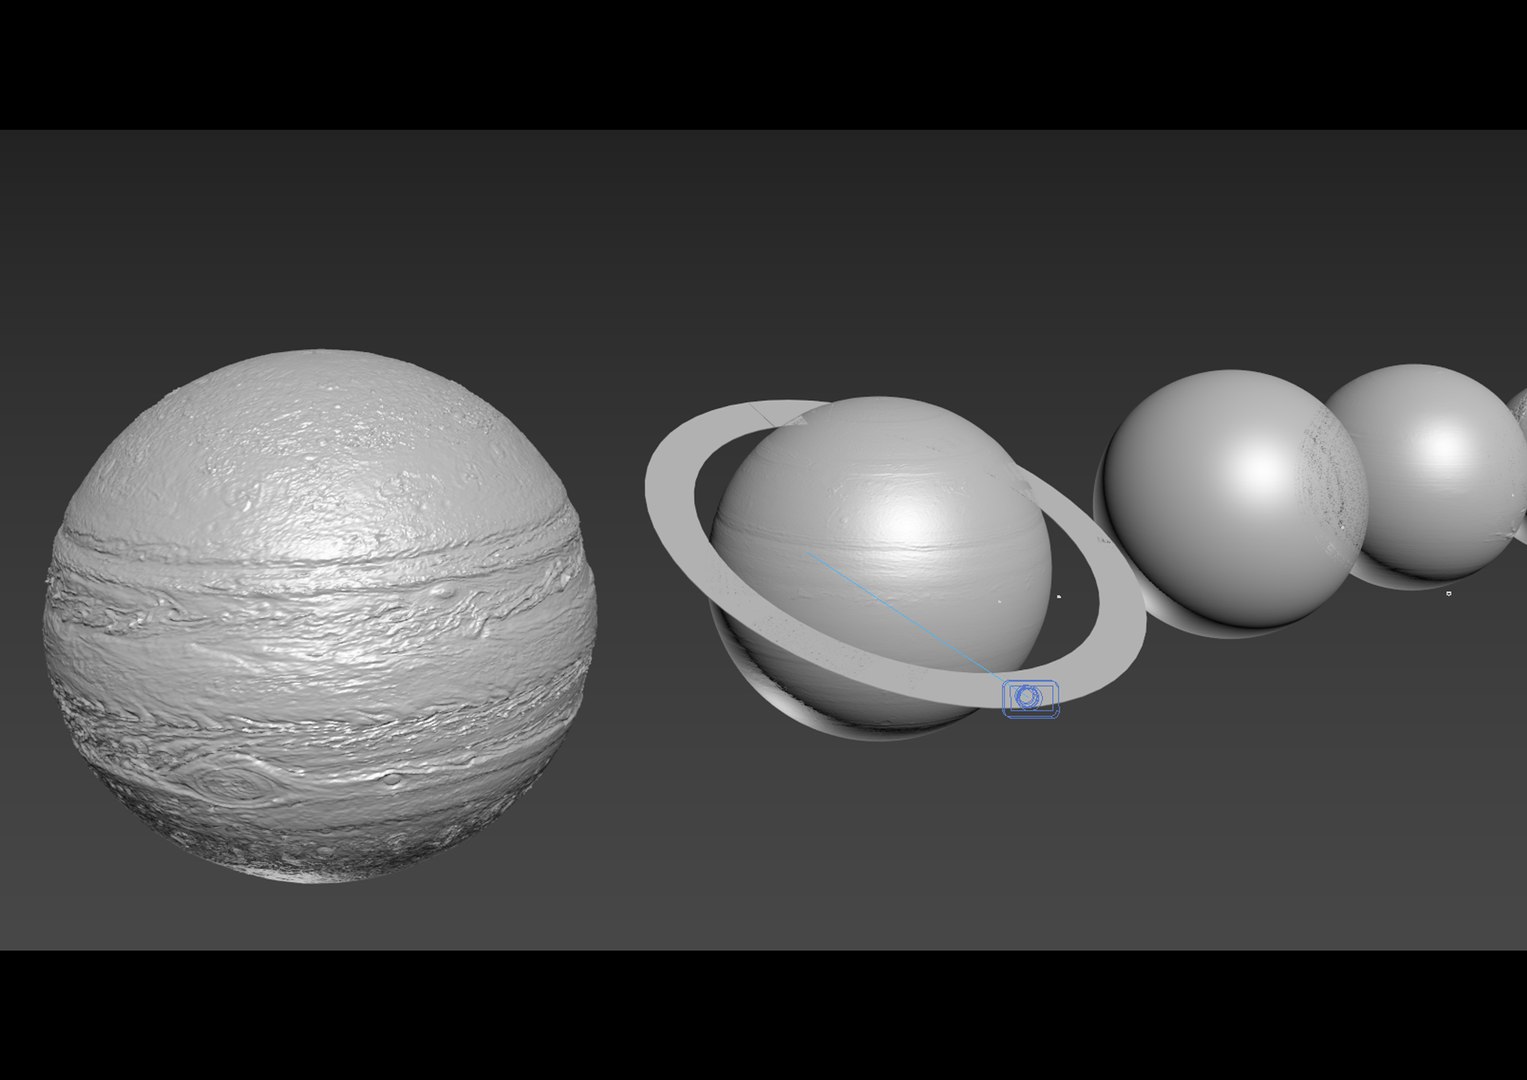 Solar system model - TurboSquid 2158833